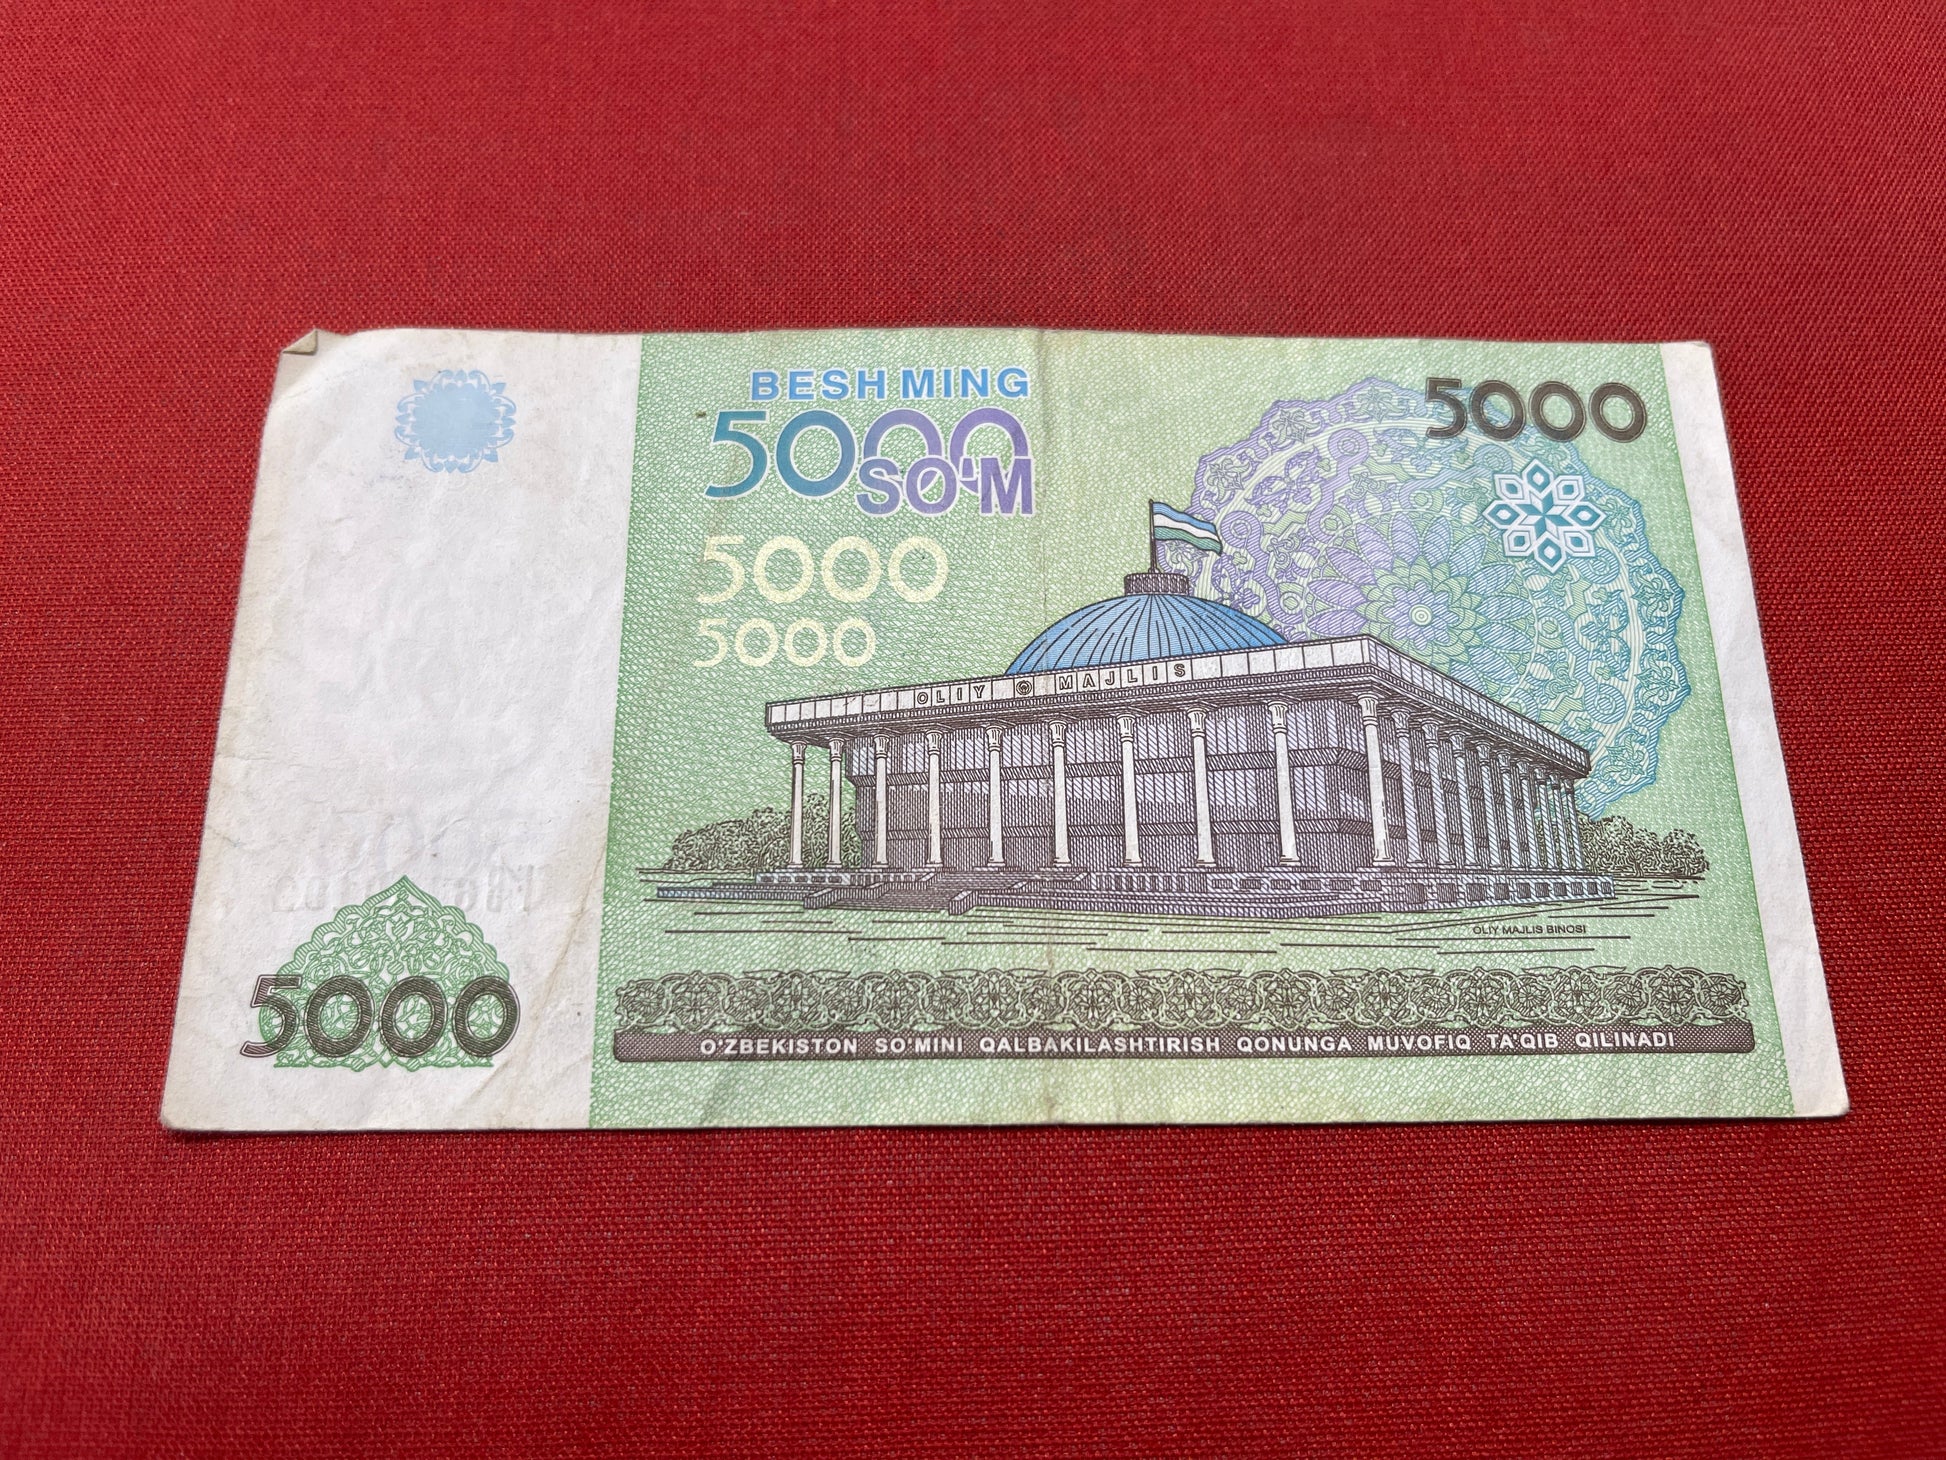 Central Bank of Uzbekistan 5000 So'm